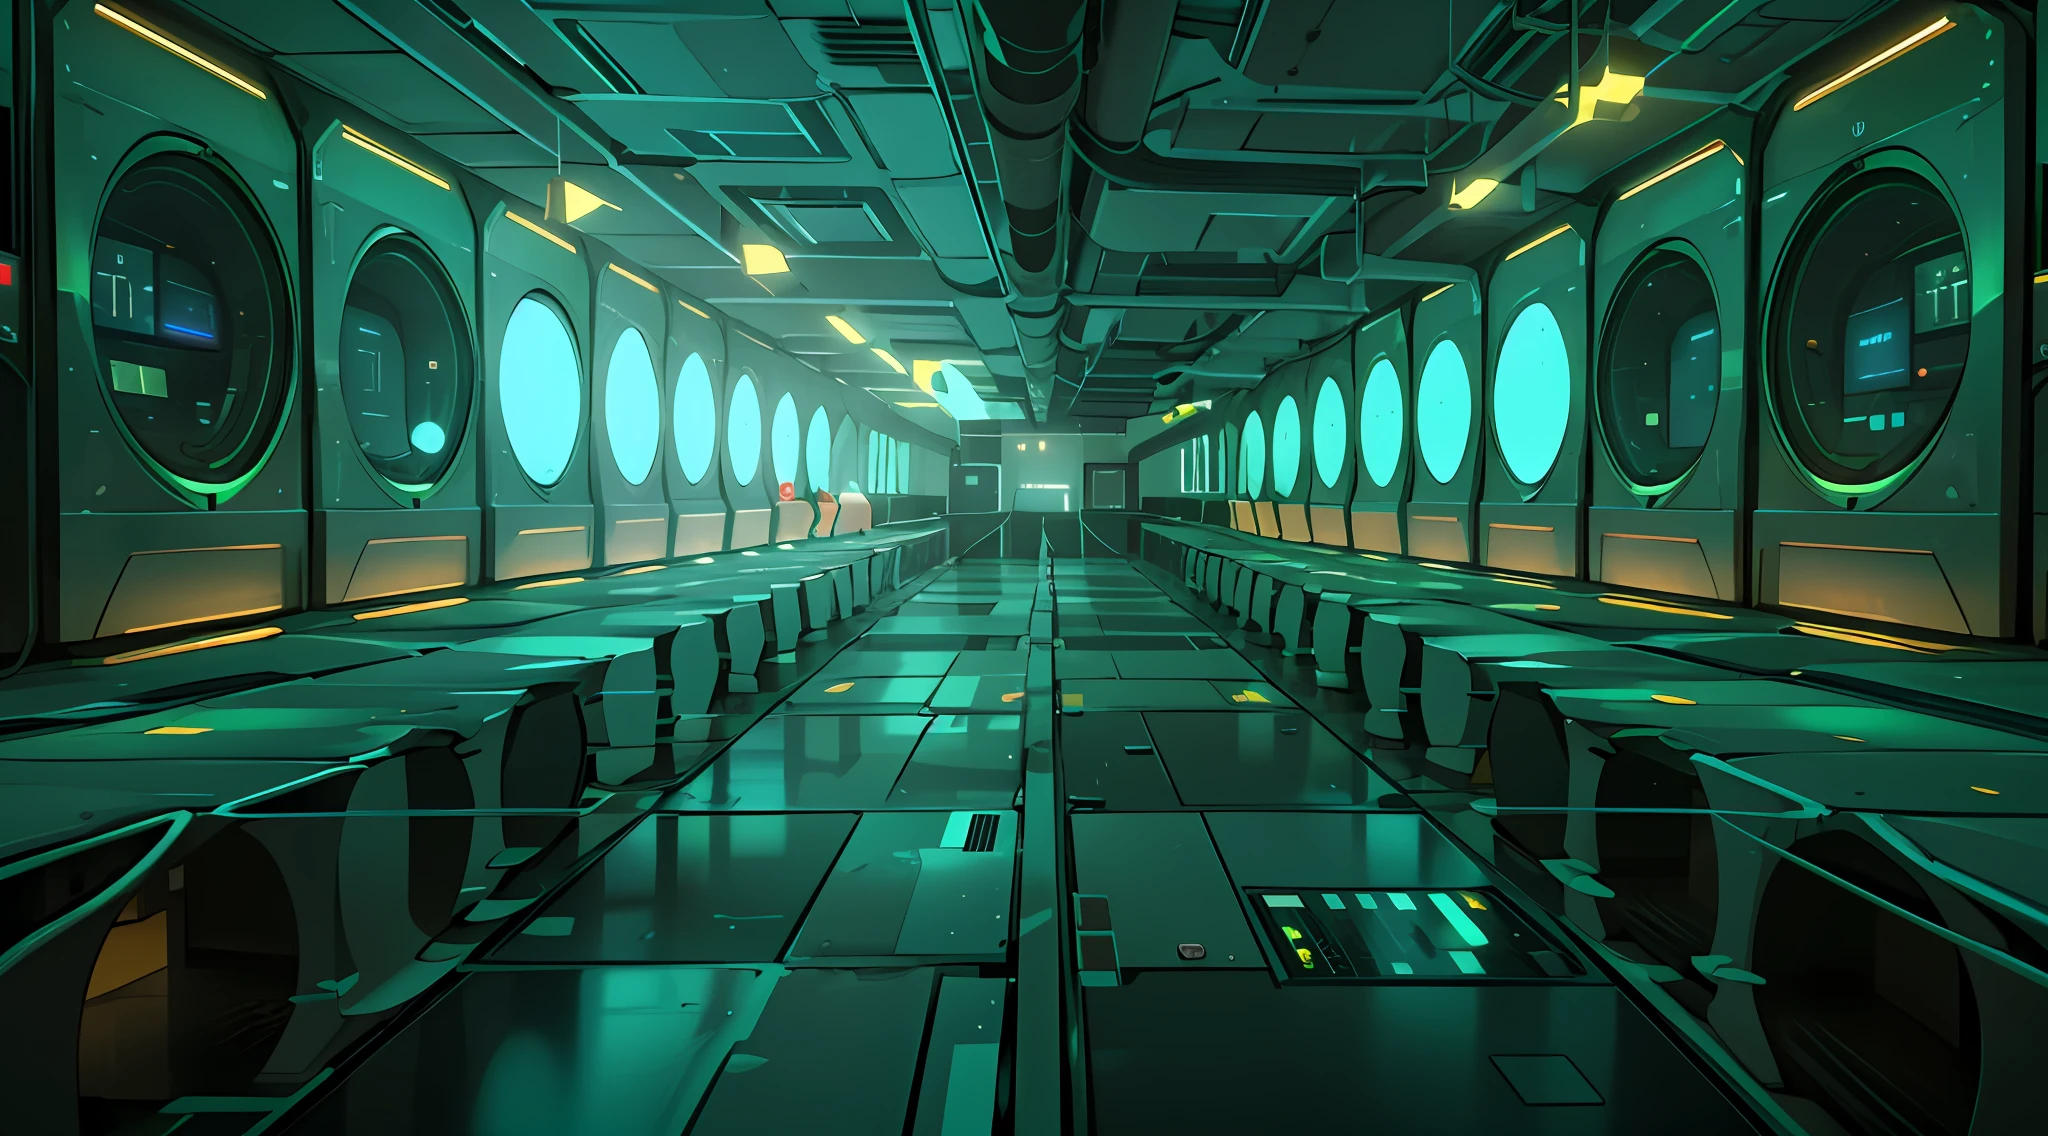 Un pasillo poco iluminado，Hay filas de datos y pantallas de computadora.，El fondo es la sala del servidor de datos.，Hackear mainframes，ciberespacio，en un centro de datos realista，3840x2160，3840 x 2160，Fondo del corredor de la nave espacial，red de arquitectura，ciberespacio surrealista，en el centro de datos detallado  ，tema de color verde